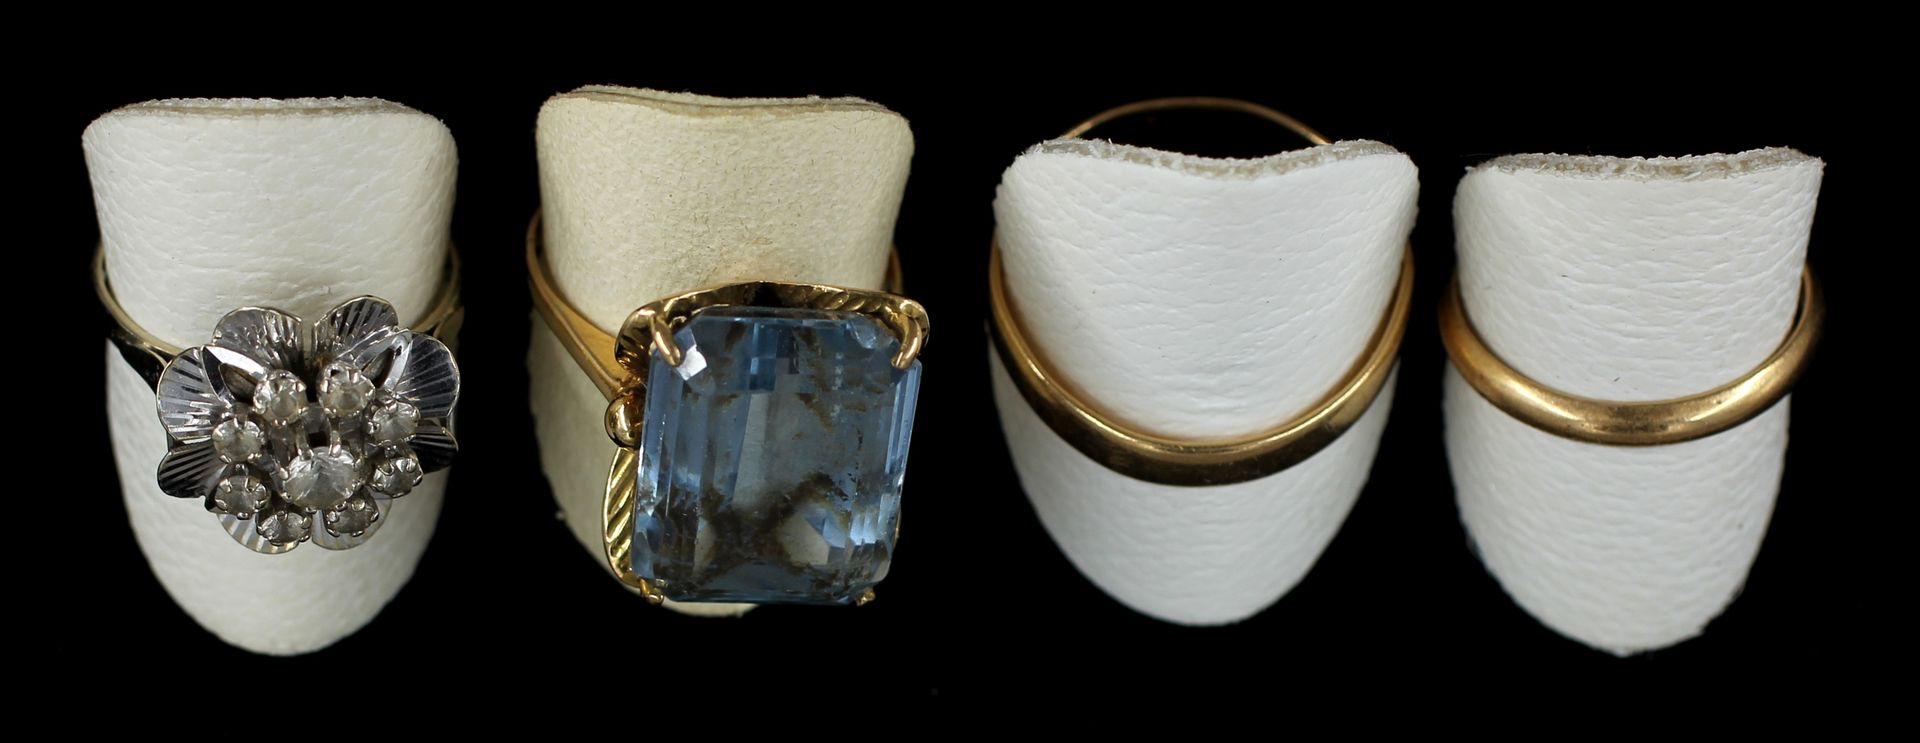 Null *一批18K黄金戒指。

- 两环，重量：2.3-2.9克。

- 戒指镶嵌一颗蓝色宝石，原重：8.2克。

- 镶嵌白色宝石的花环，重量：4.1克。